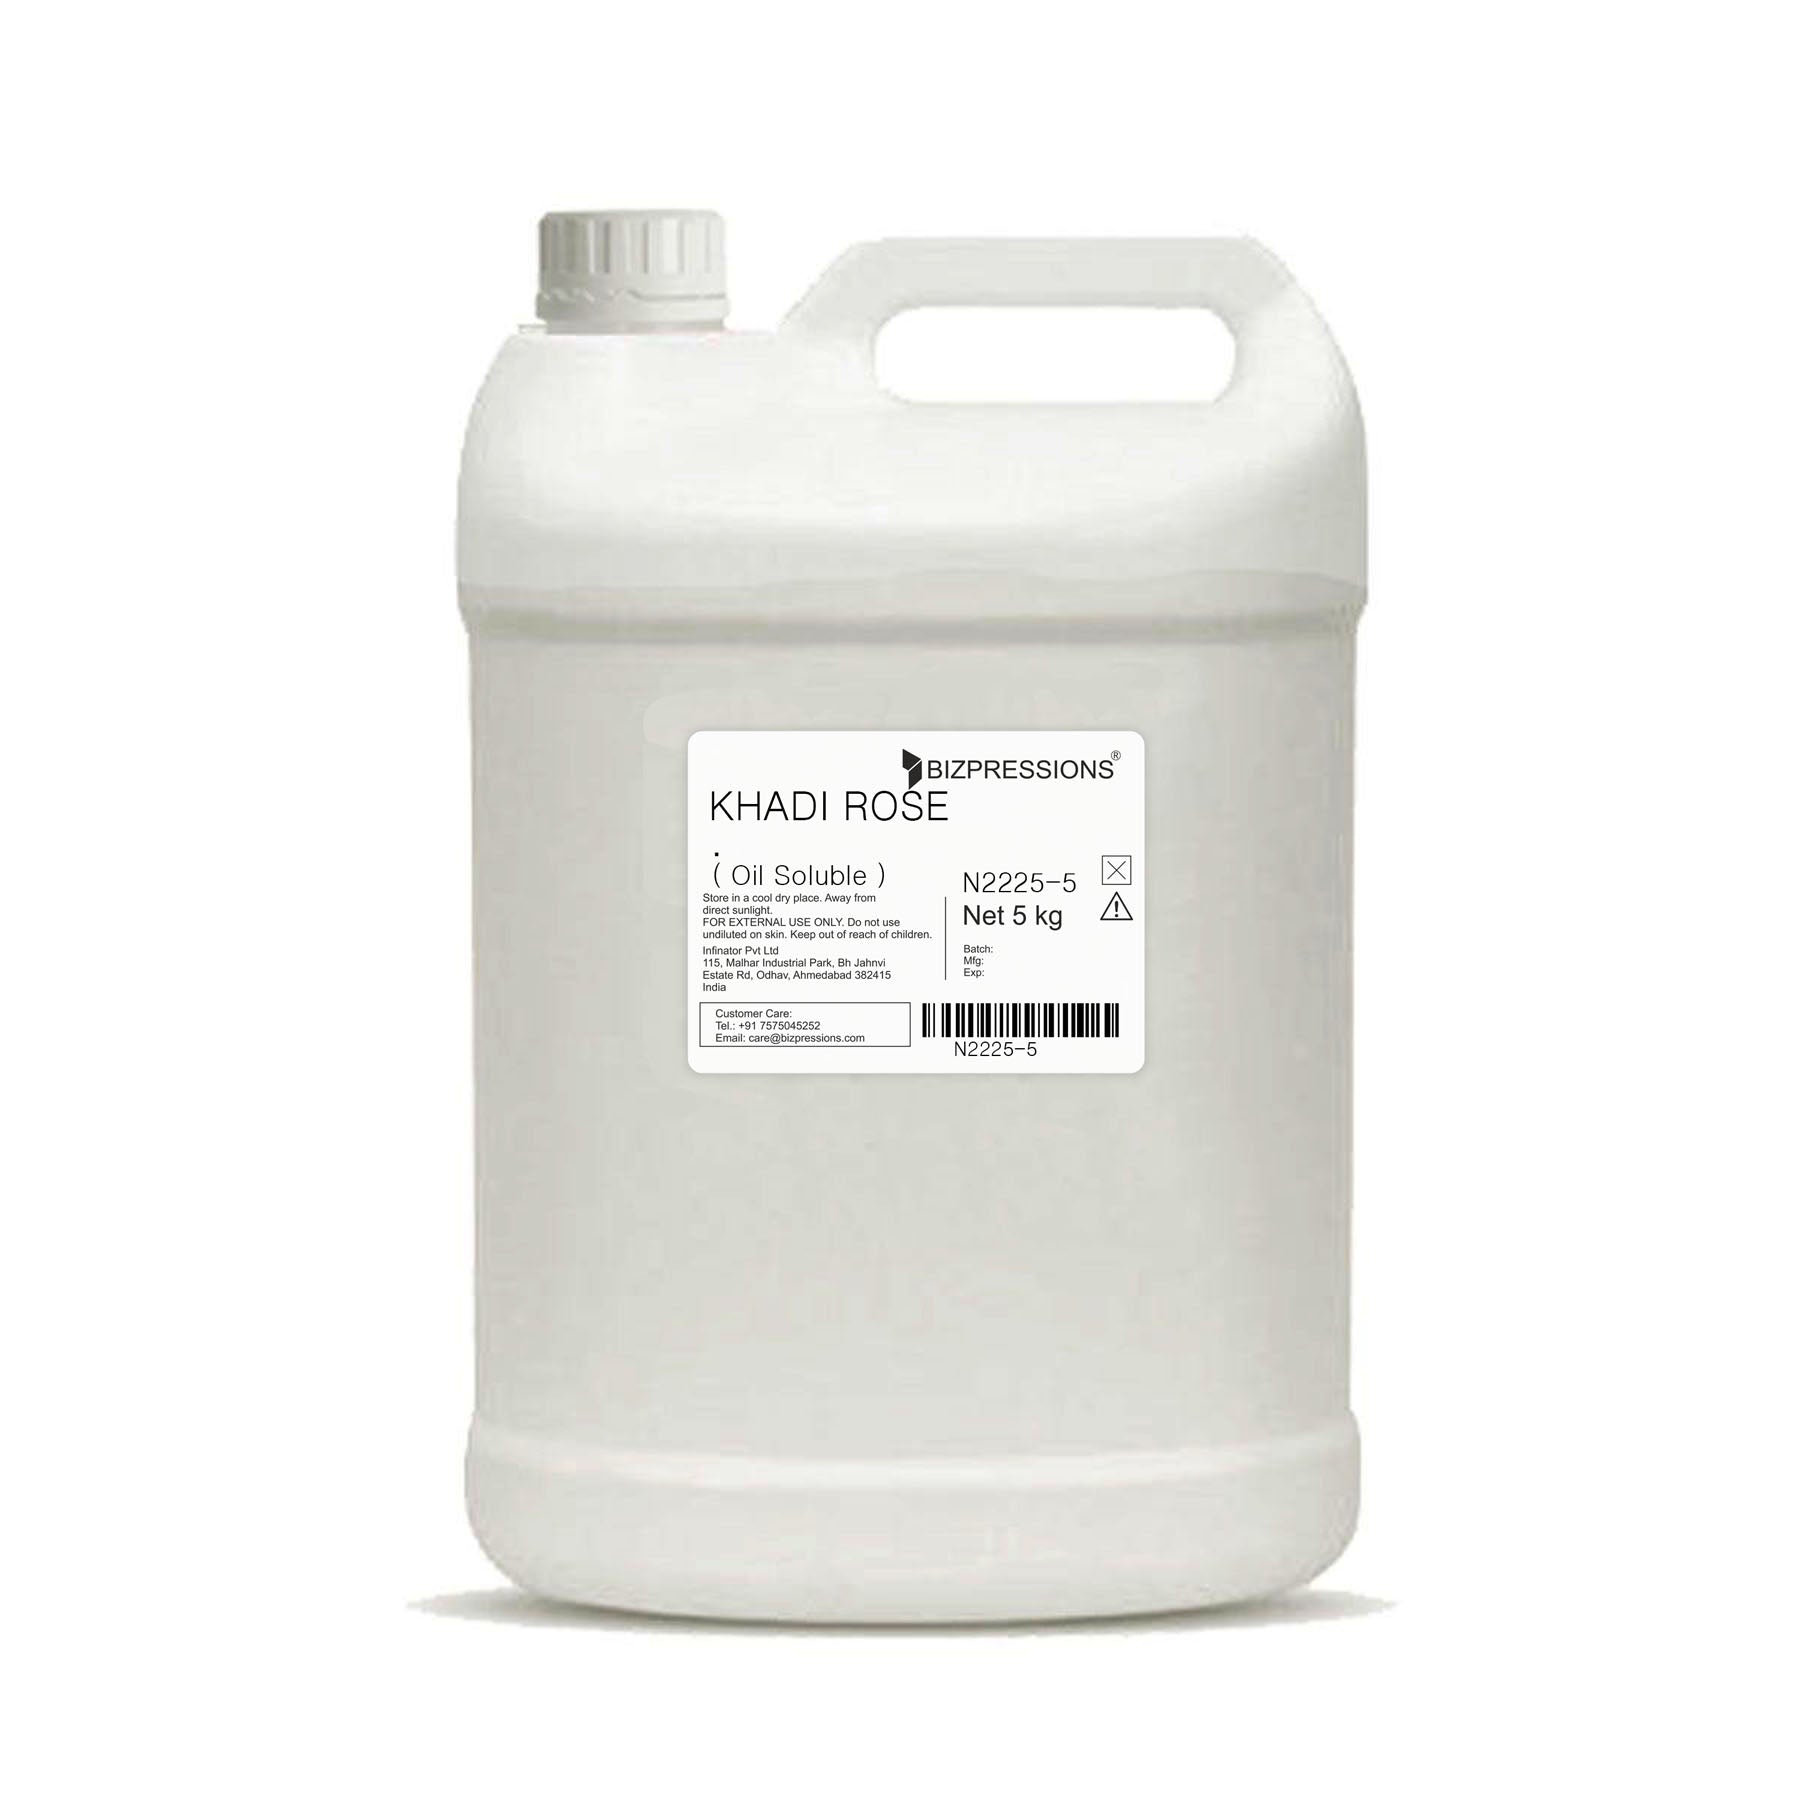 KHADI ROSE - Fragrance ( Oil Soluble ) - 5 kg